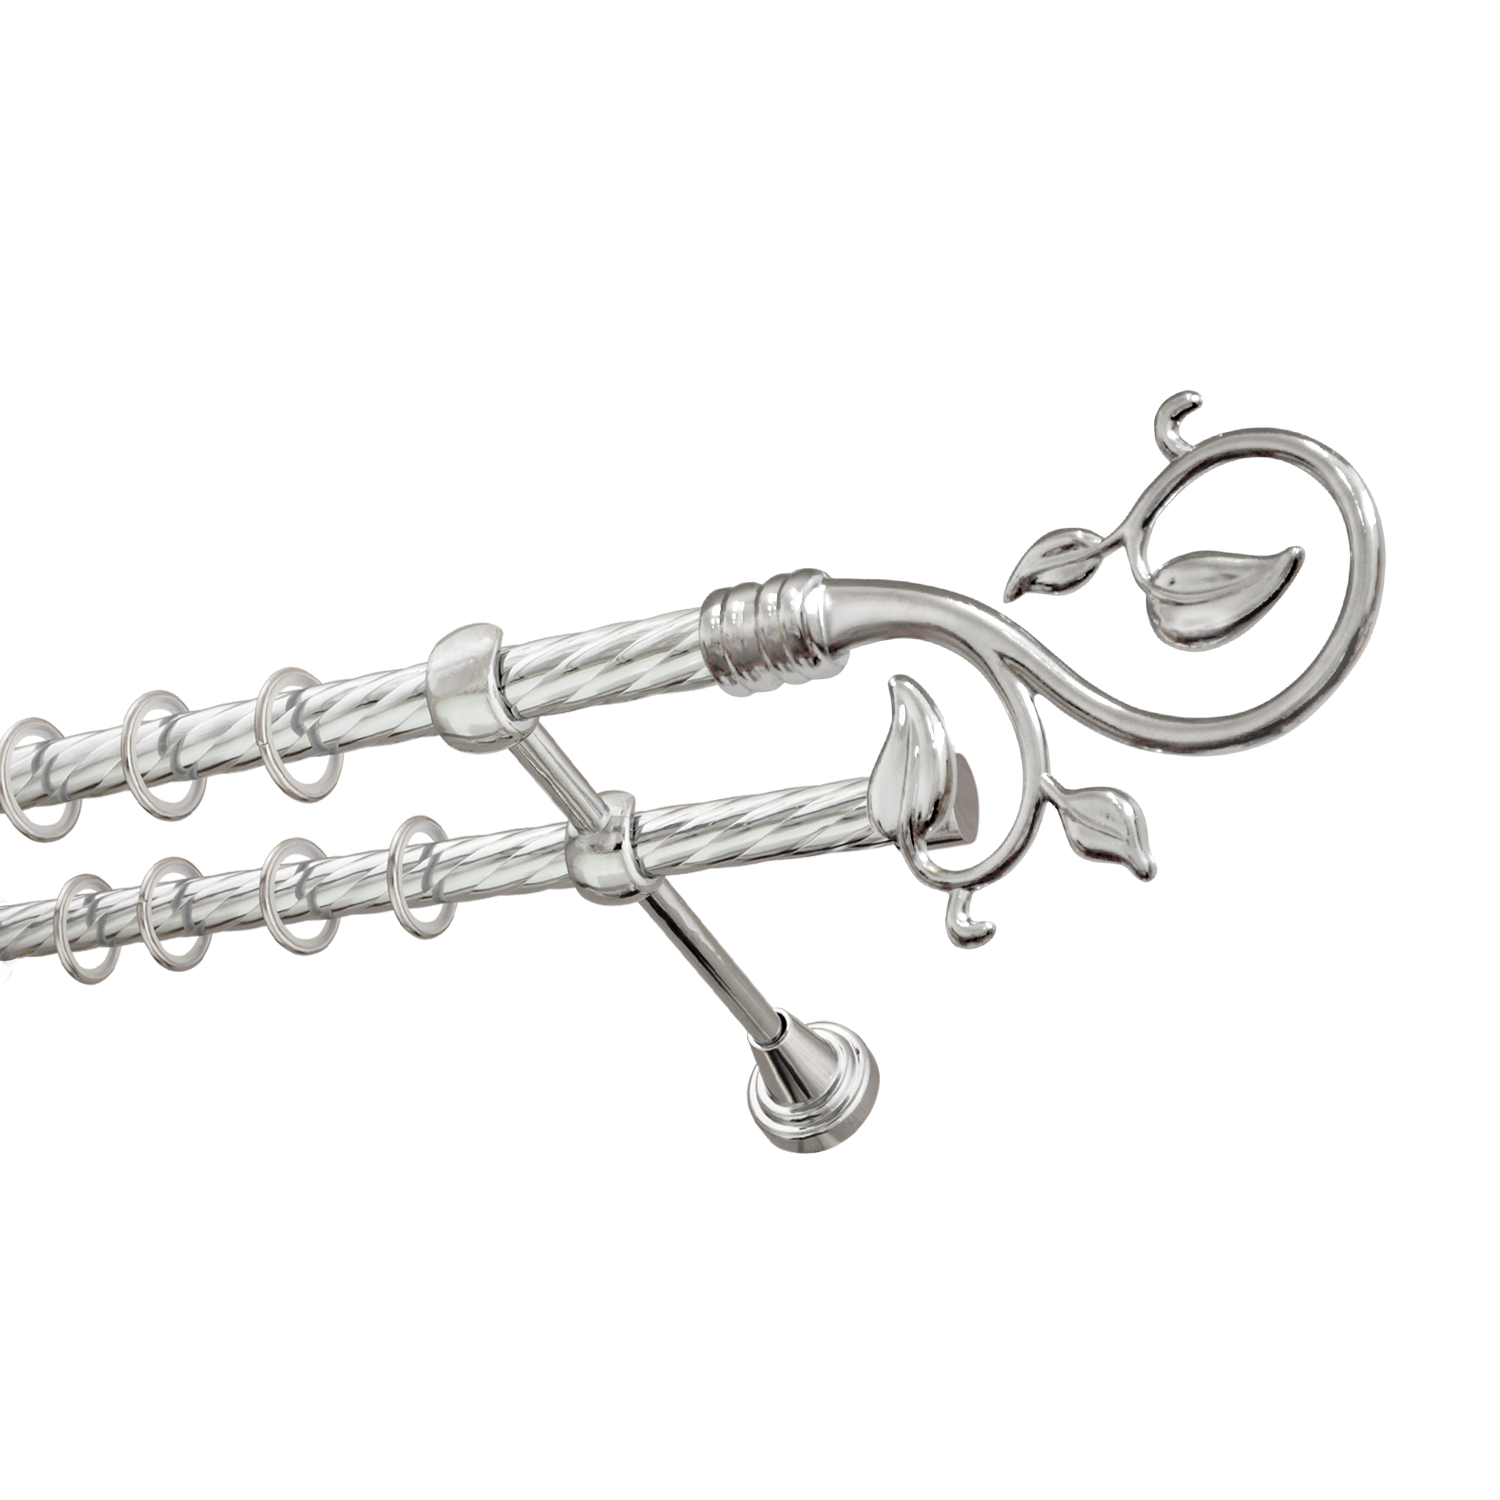 Металлический карниз для штор Амели, двухрядный 16/16 мм, серебро, витая штанга, длина 300 см - фото Wikidecor.ru